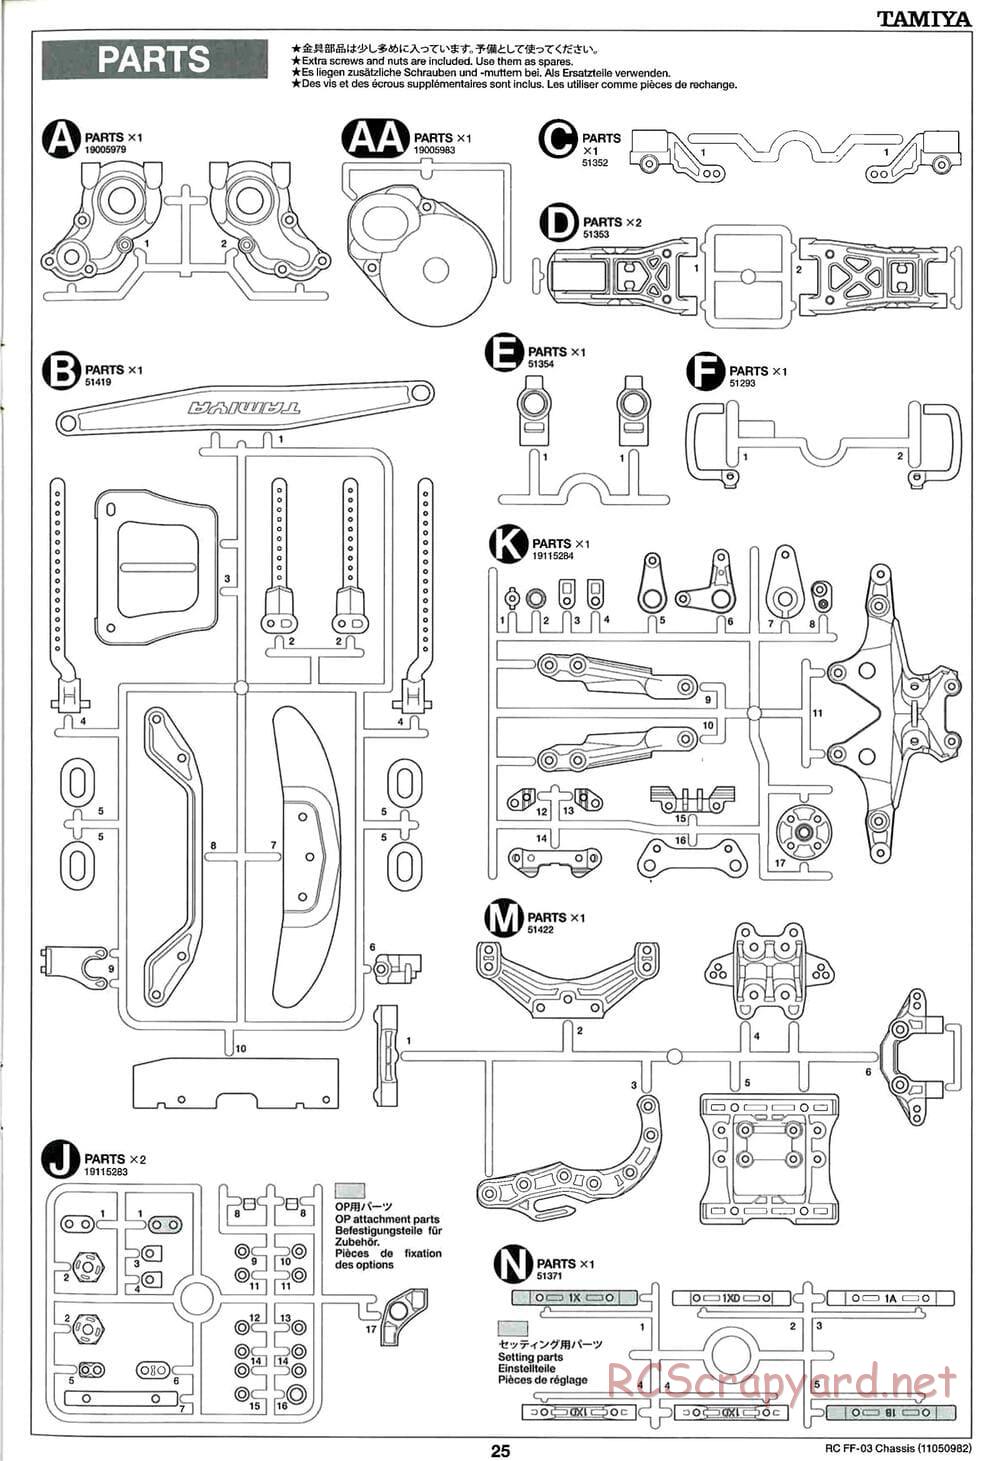 Tamiya - Honda CR-Z - FF-03 Chassis - Manual - Page 25